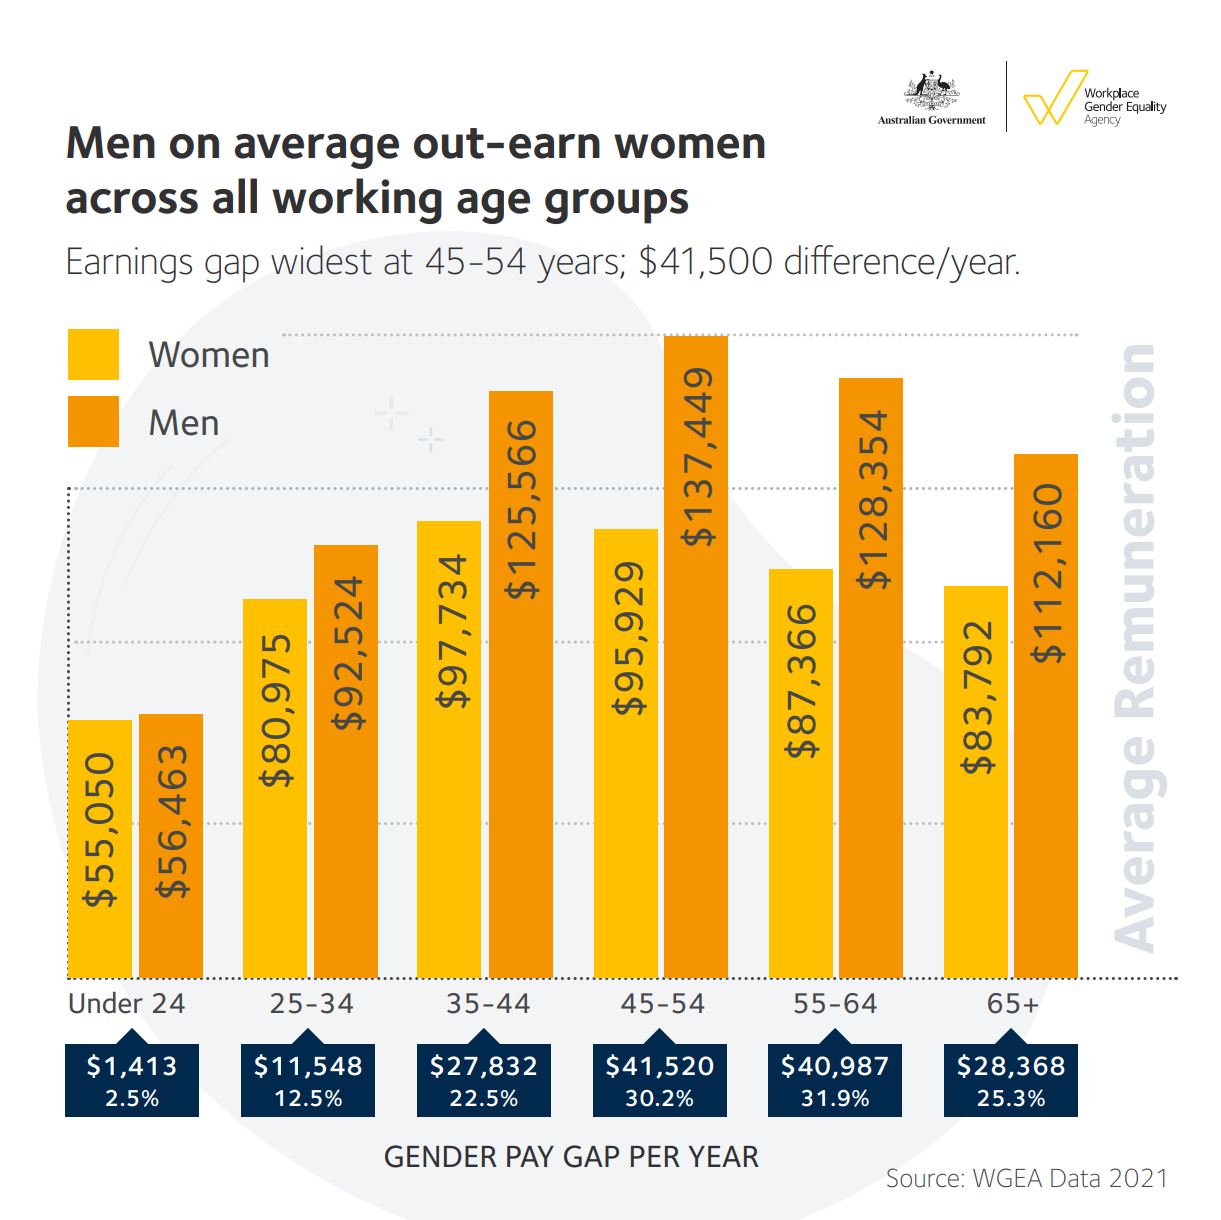 Ein gelbes und orangefarbenes Balkendiagramm, das den jährlichen Lohnunterschied zwischen Männern und Frauen nach Altersgruppen zeigt.